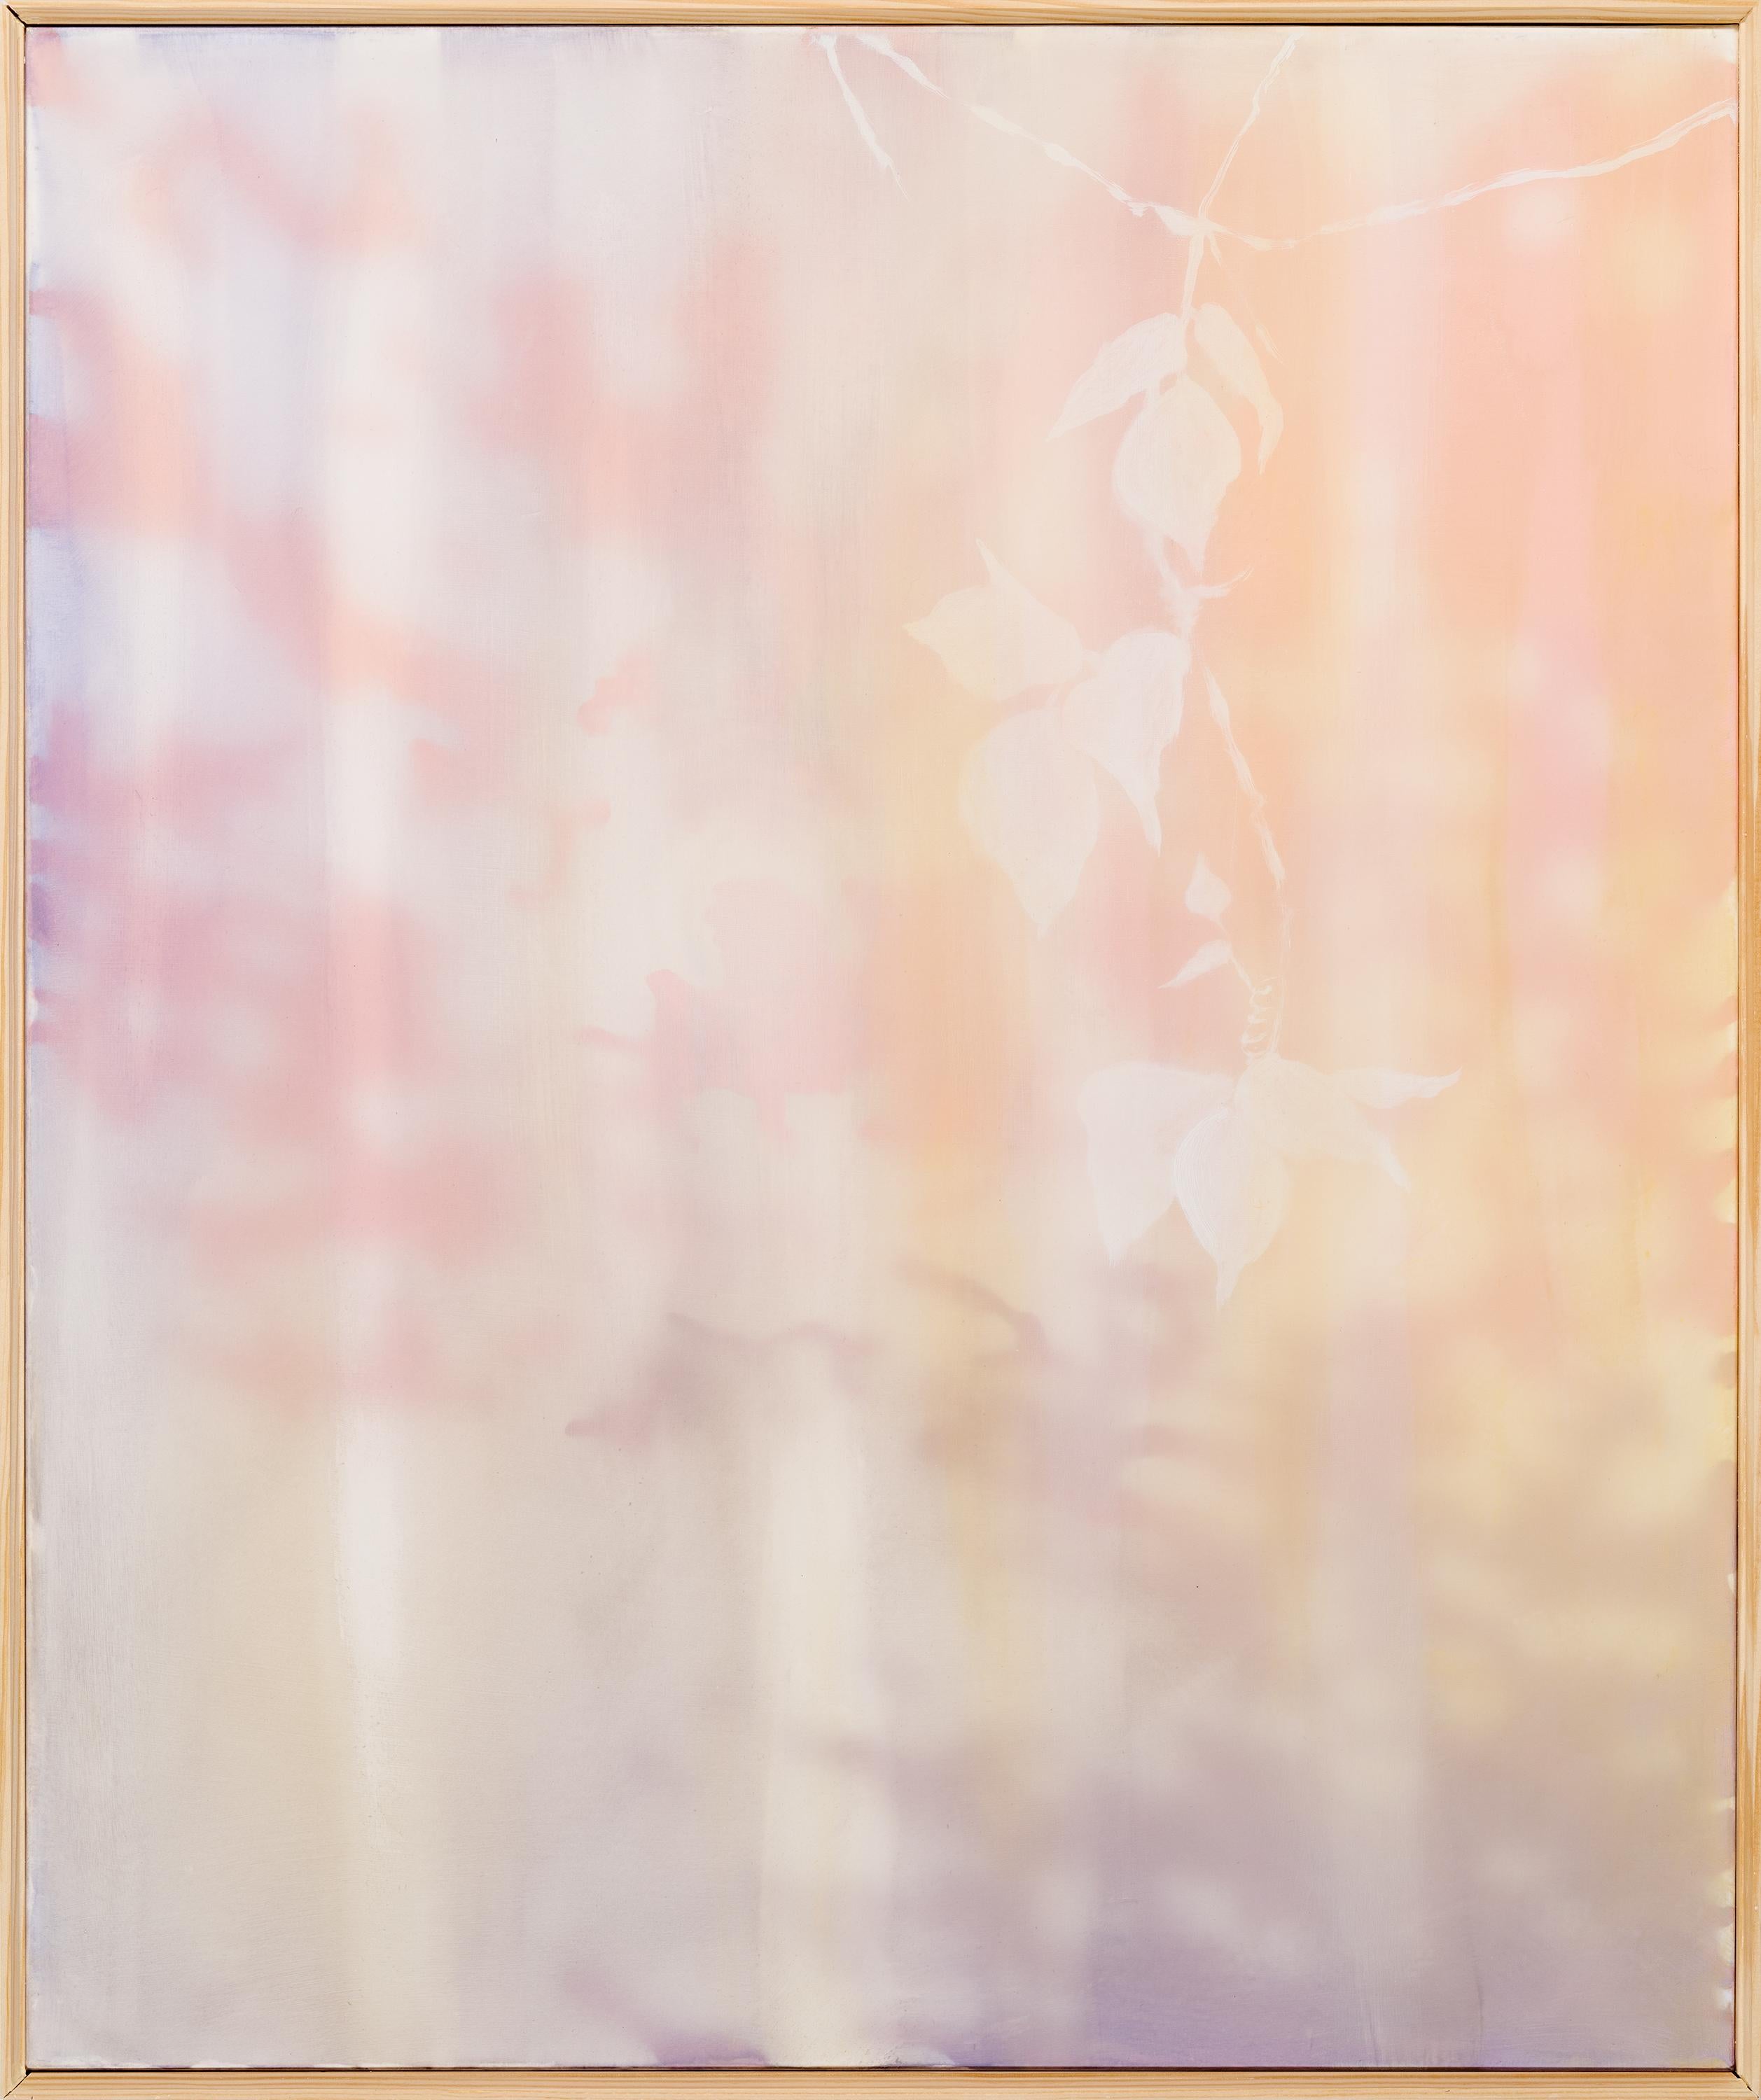 TENDRIL - Pfirsichfarbenes, lavendelfarbenes, weißes Naturgemälde von Kudzu Vine, transparentes Netz